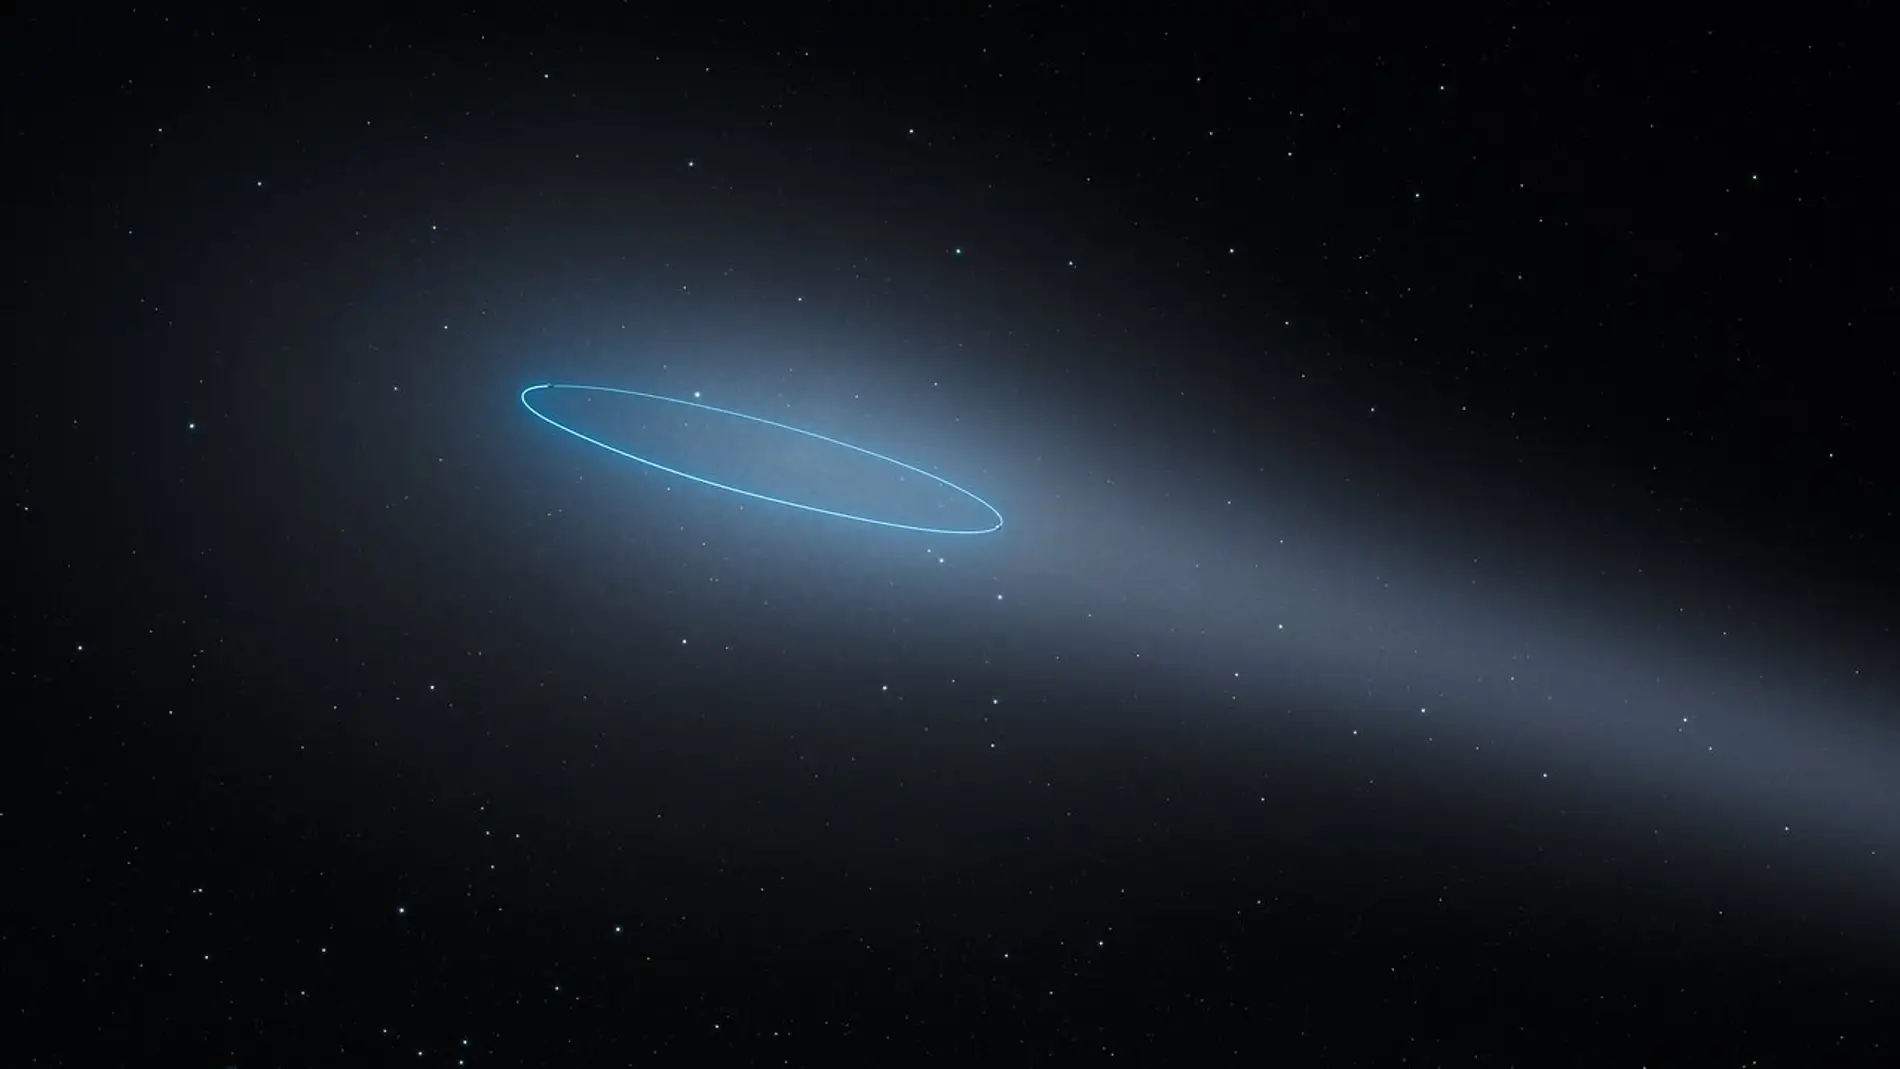 El sistema binario de asteroides presenta una estela y un halo brillante